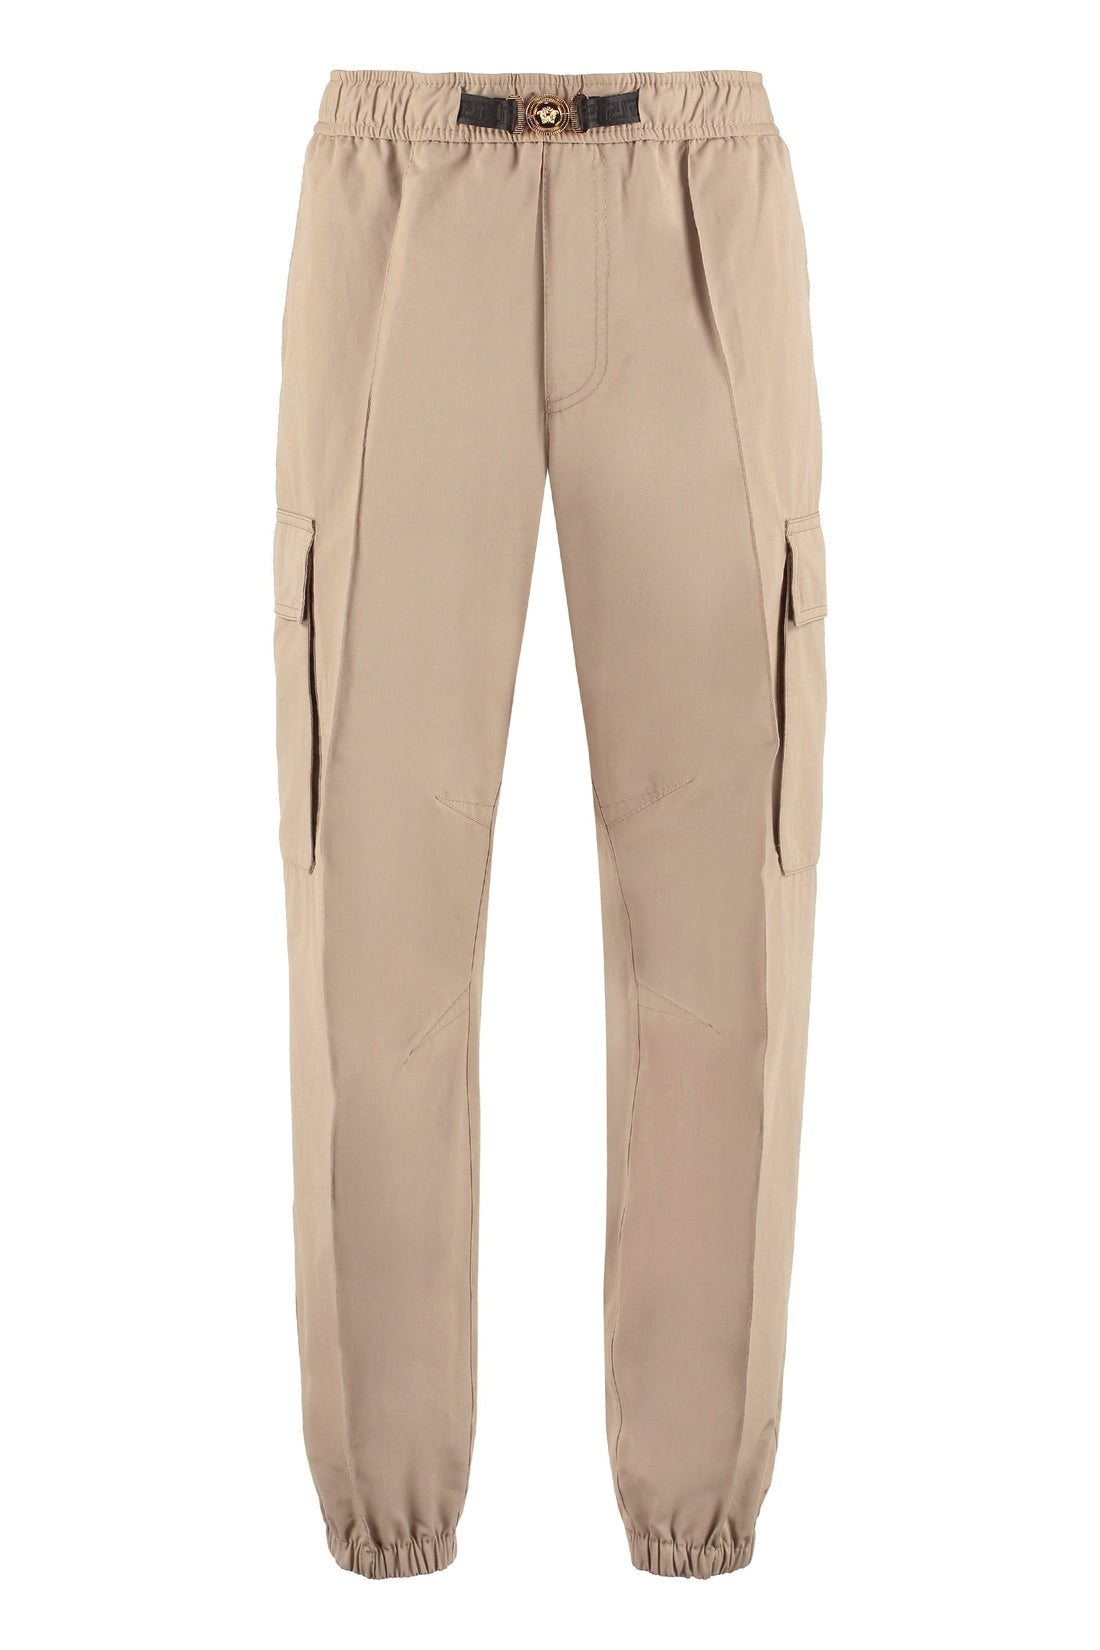 Versace-OUTLET-SALE-Cotton cargo-trousers-ARCHIVIST